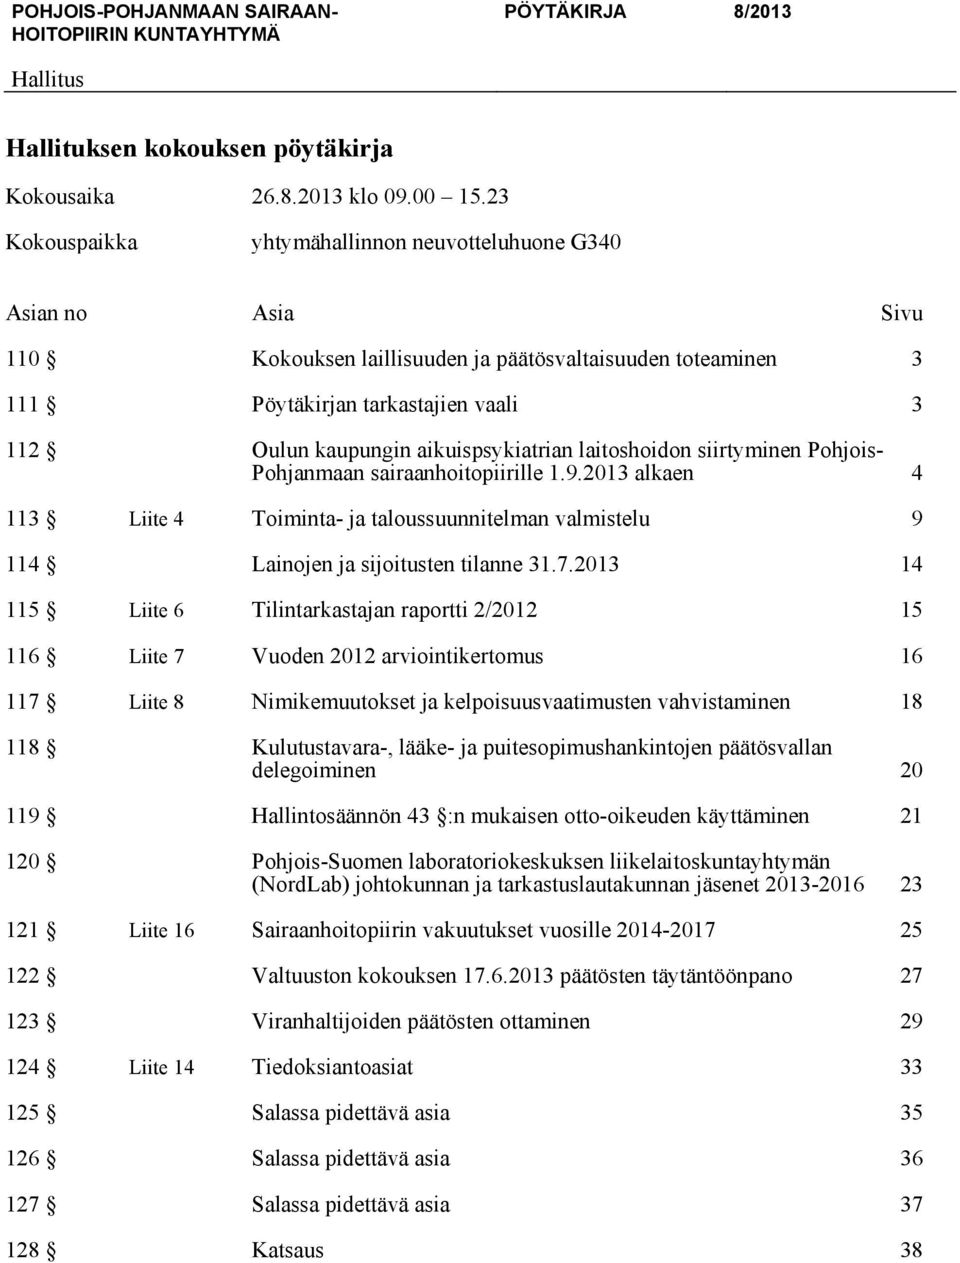 laitoshoidon siirtyminen Pohjois- Pohjanmaan sairaanhoitopiirille 1.9.2013 alkaen 4 113 Liite 4 Toiminta- ja taloussuunnitelman valmistelu 9 114 Lainojen ja sijoitusten tilanne 31.7.